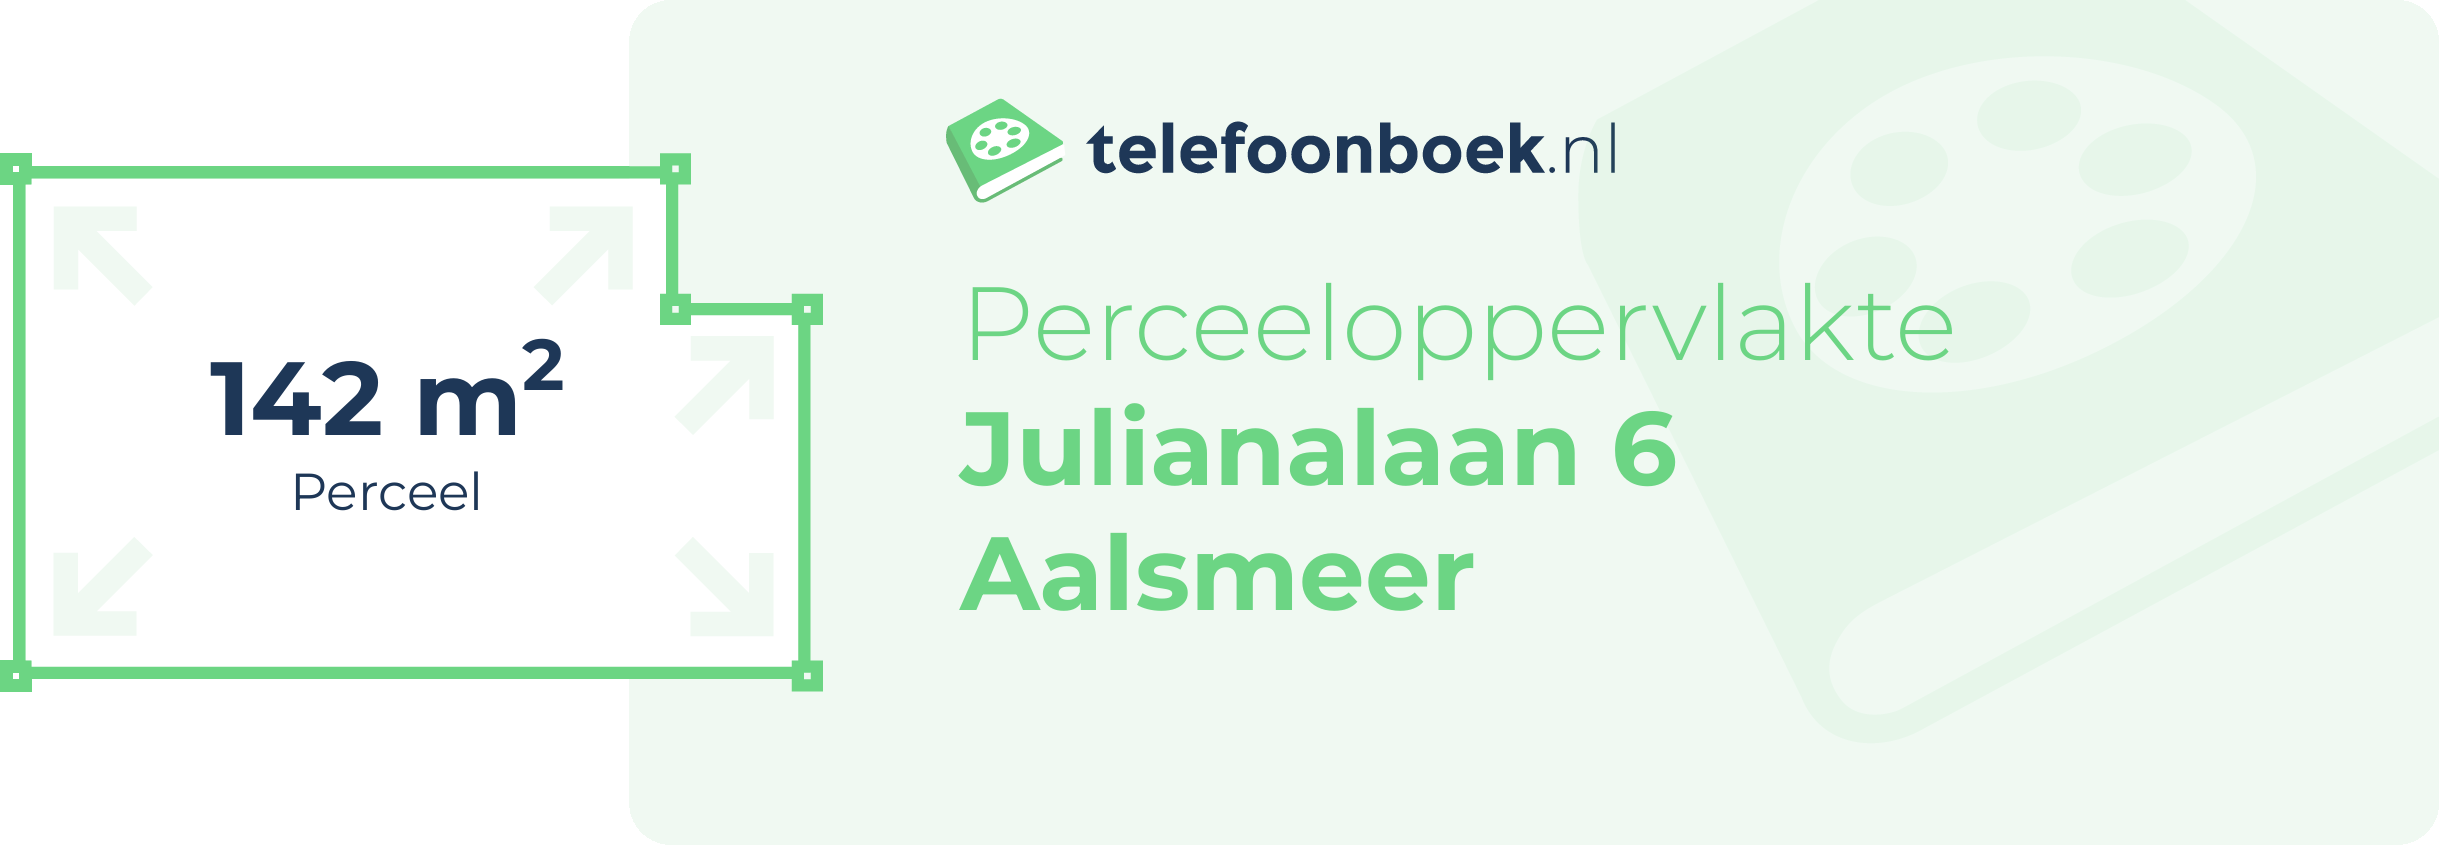 Perceeloppervlakte Julianalaan 6 Aalsmeer